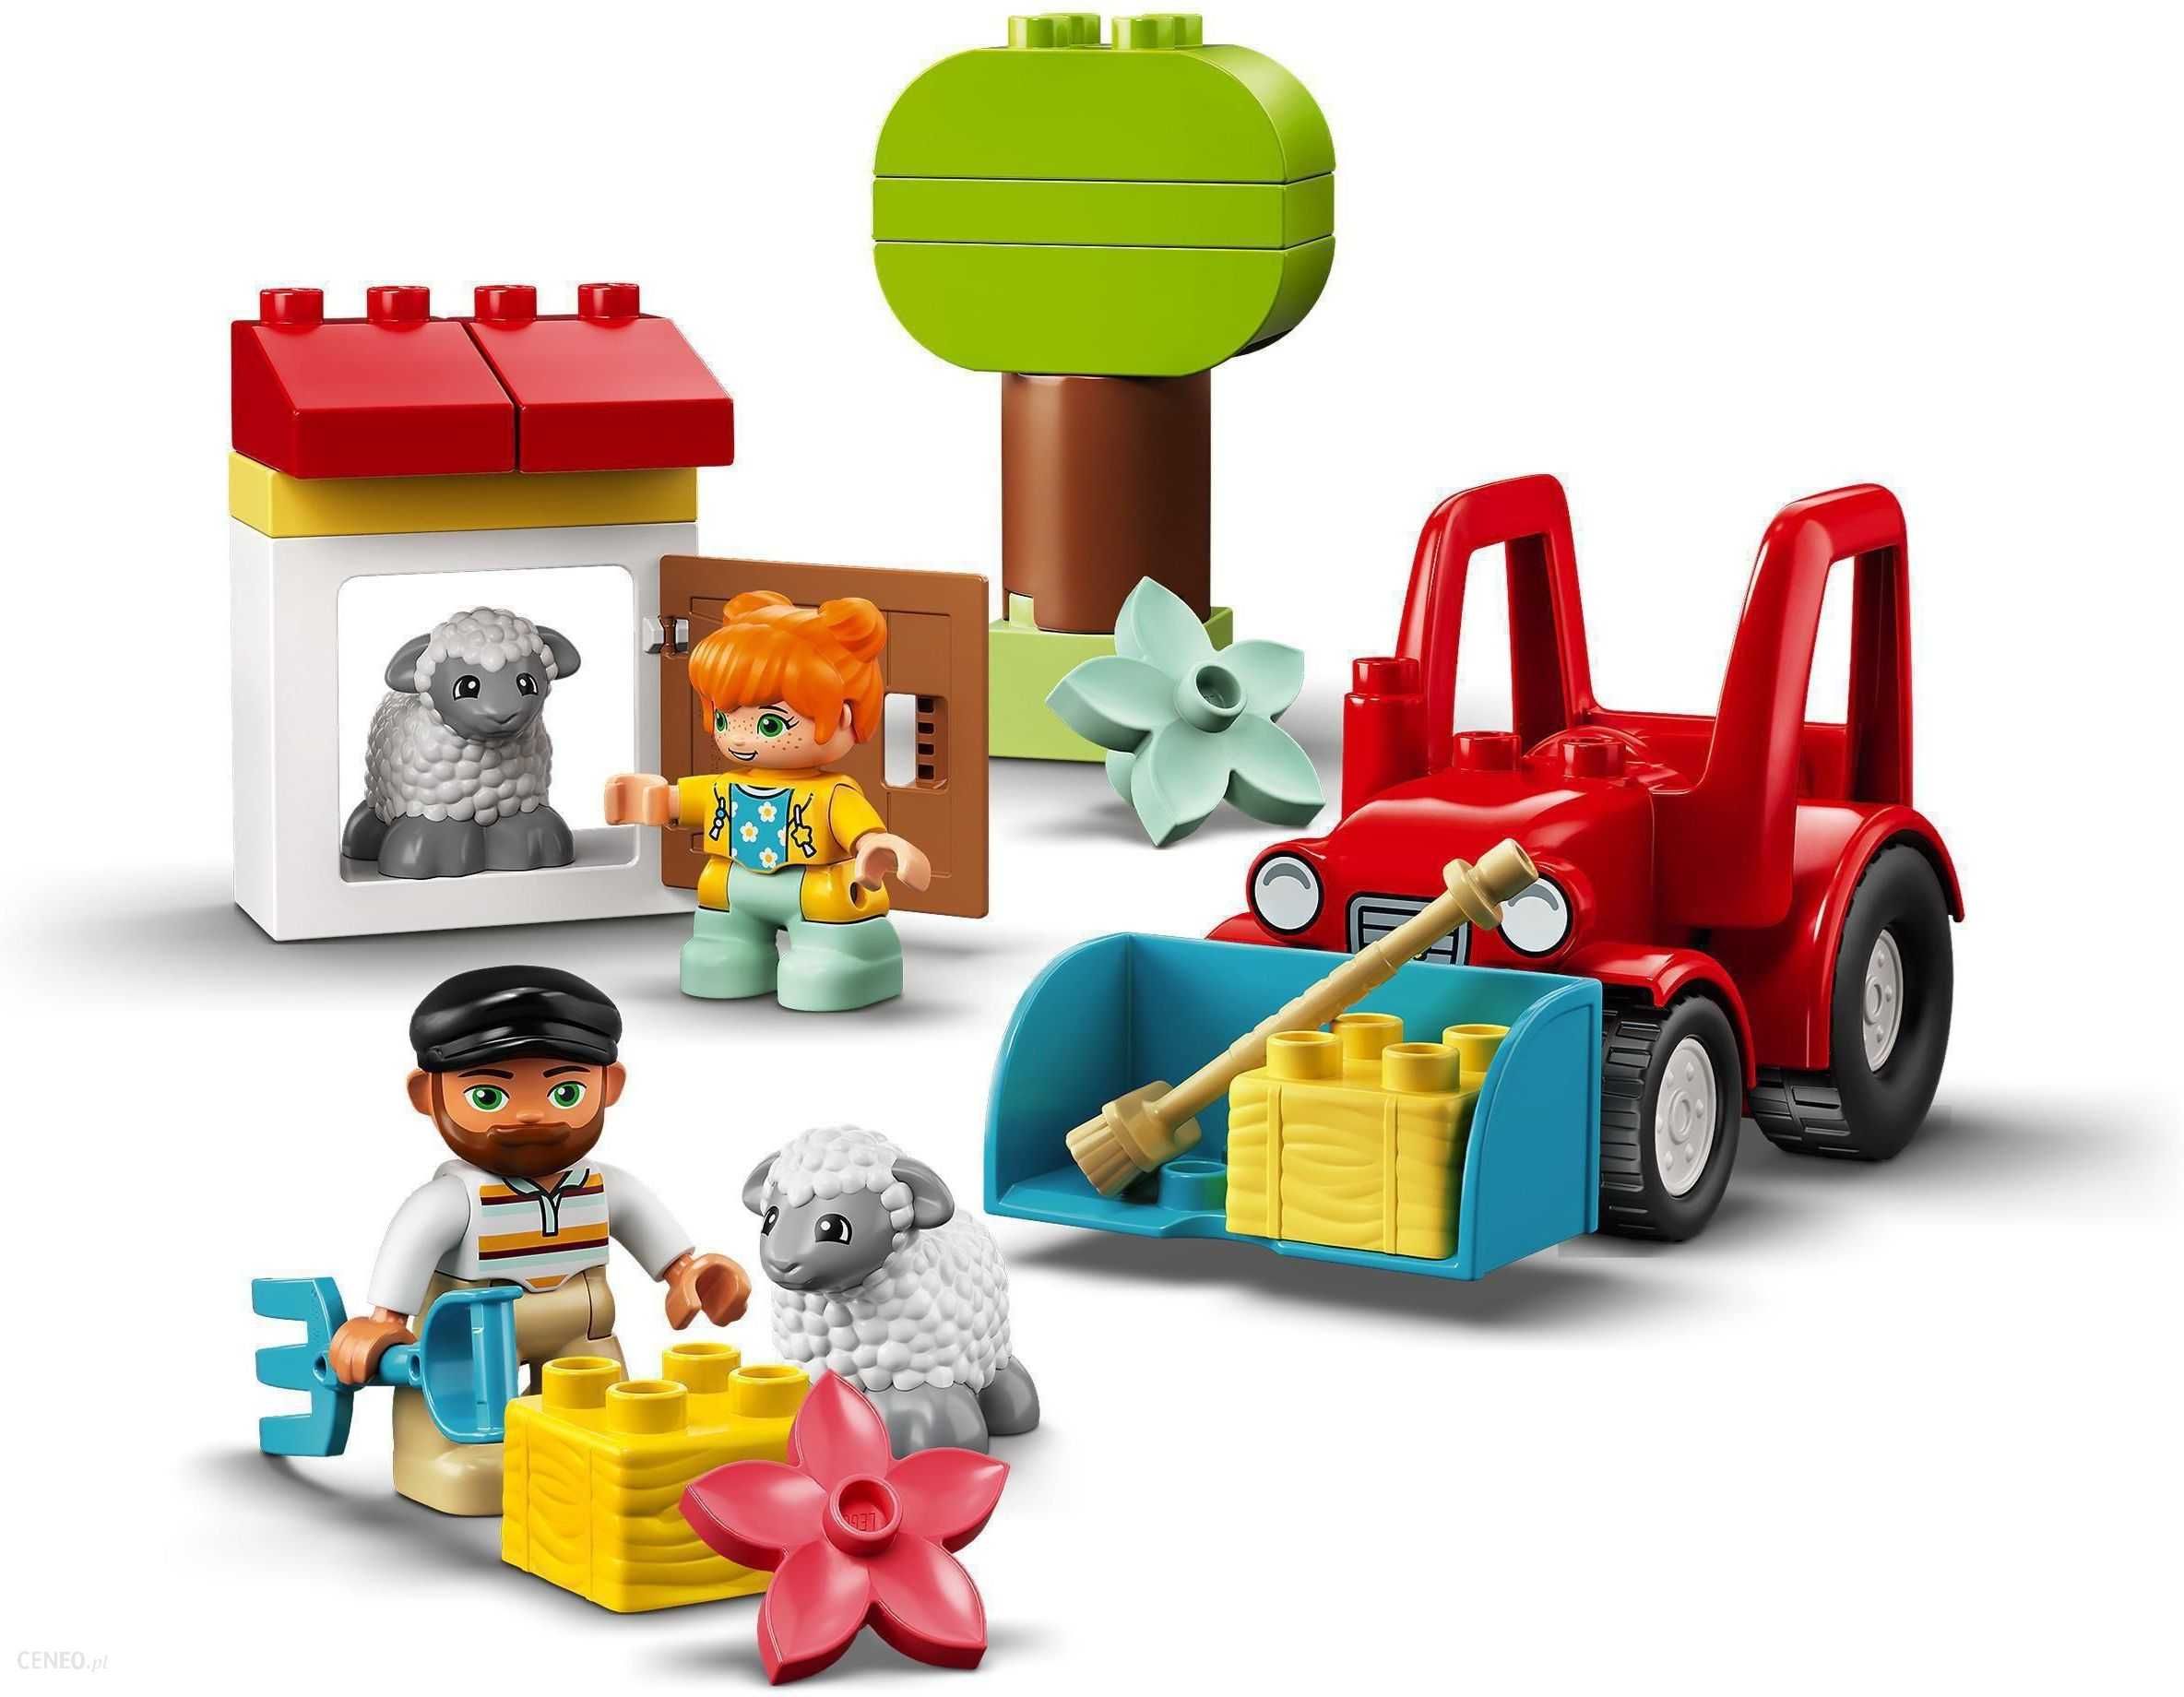 -NOWE- LEGO DUPLO 10950 Traktor i zwierzęta gospodarskie - NOWE